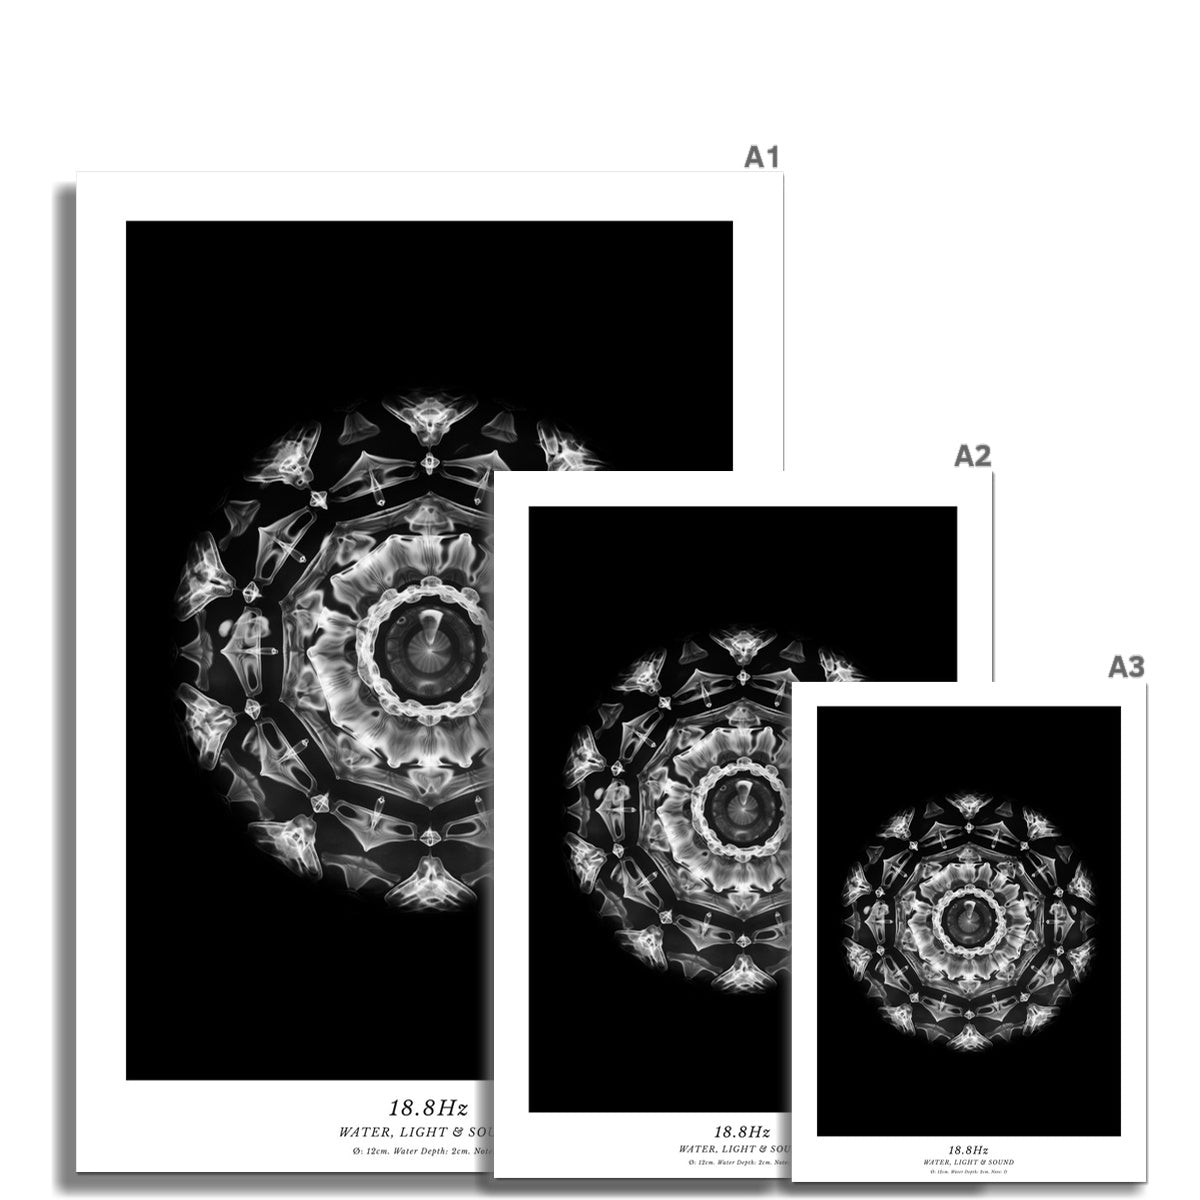 cymatics photo print B/W - 18.8Hz - Journey of Curiosity